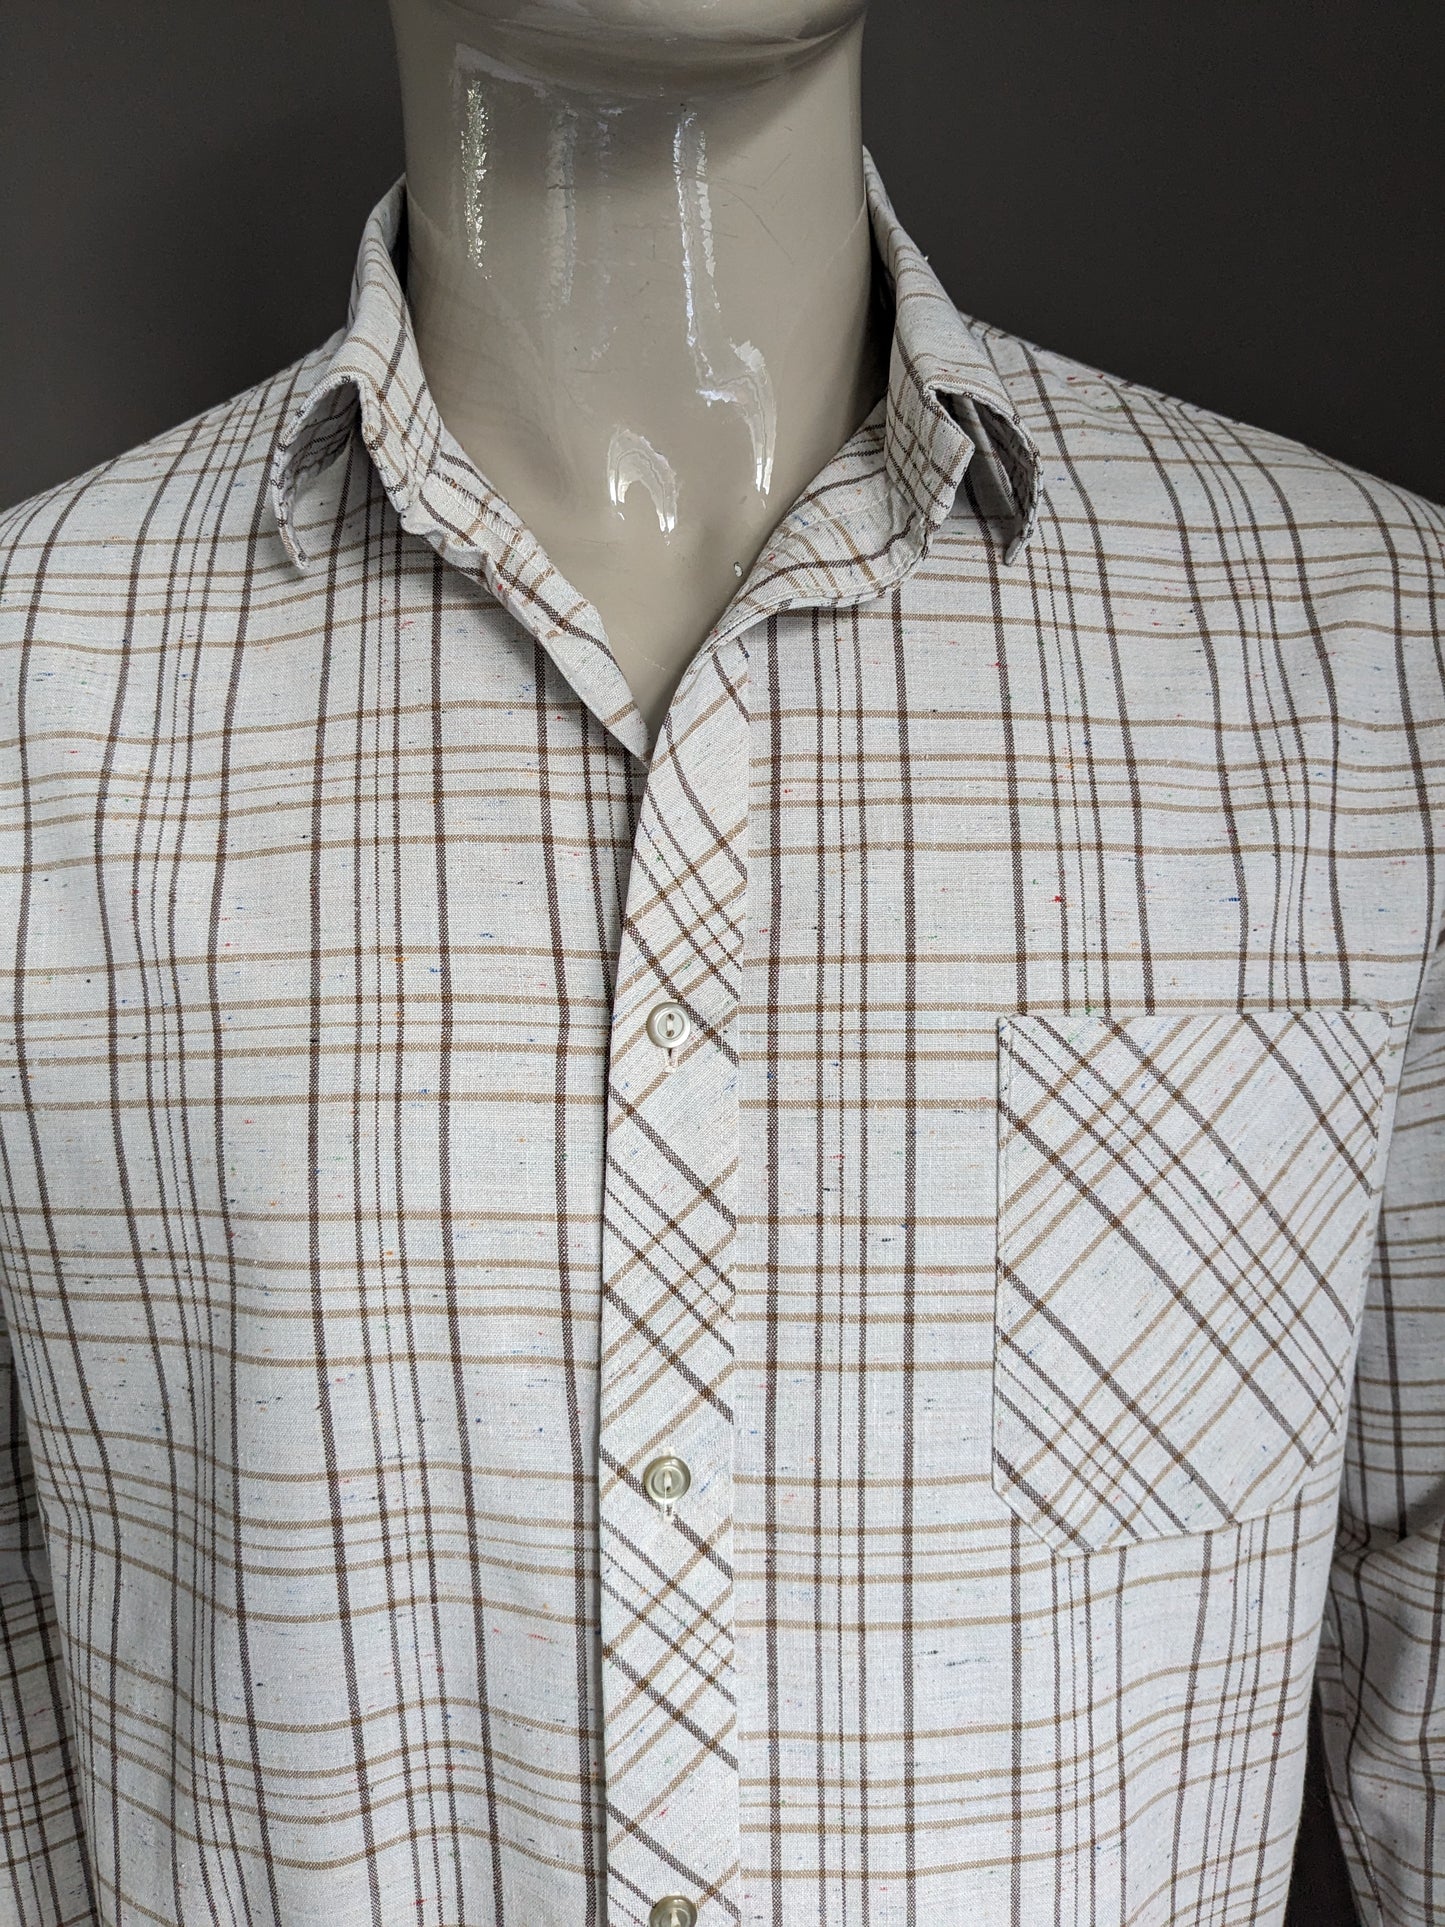 Vintage Brandless Shirt. Beige Brown mit farbigen Punkten geprüft. Größe L.